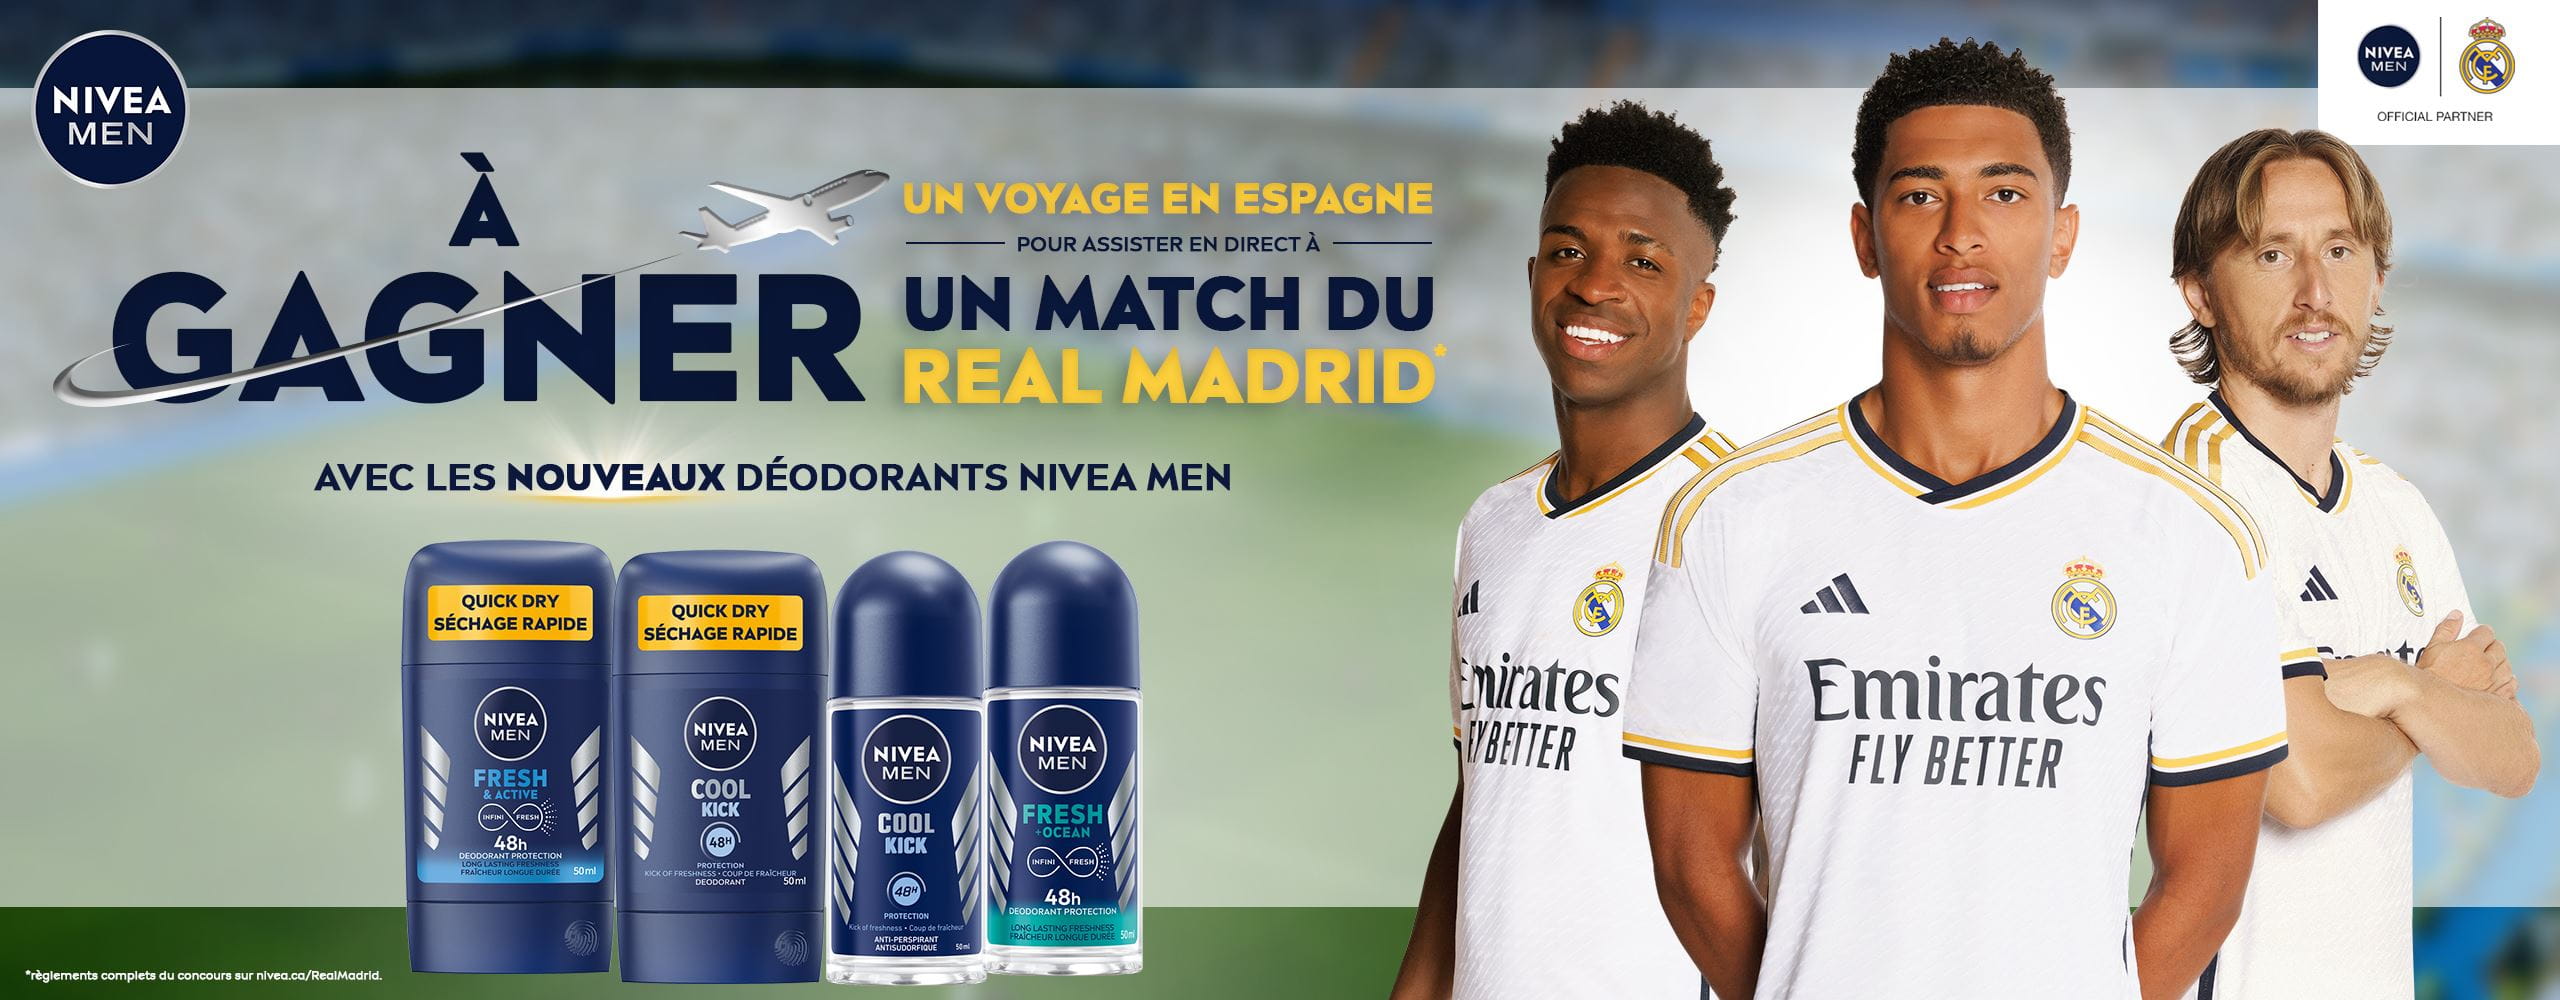 Vue de trois joueurs de soccer du Real Madrid se tenant les uns à côté des autres, avec quatre déodorants pour hommes NIVEA MEN montrés à gauche.